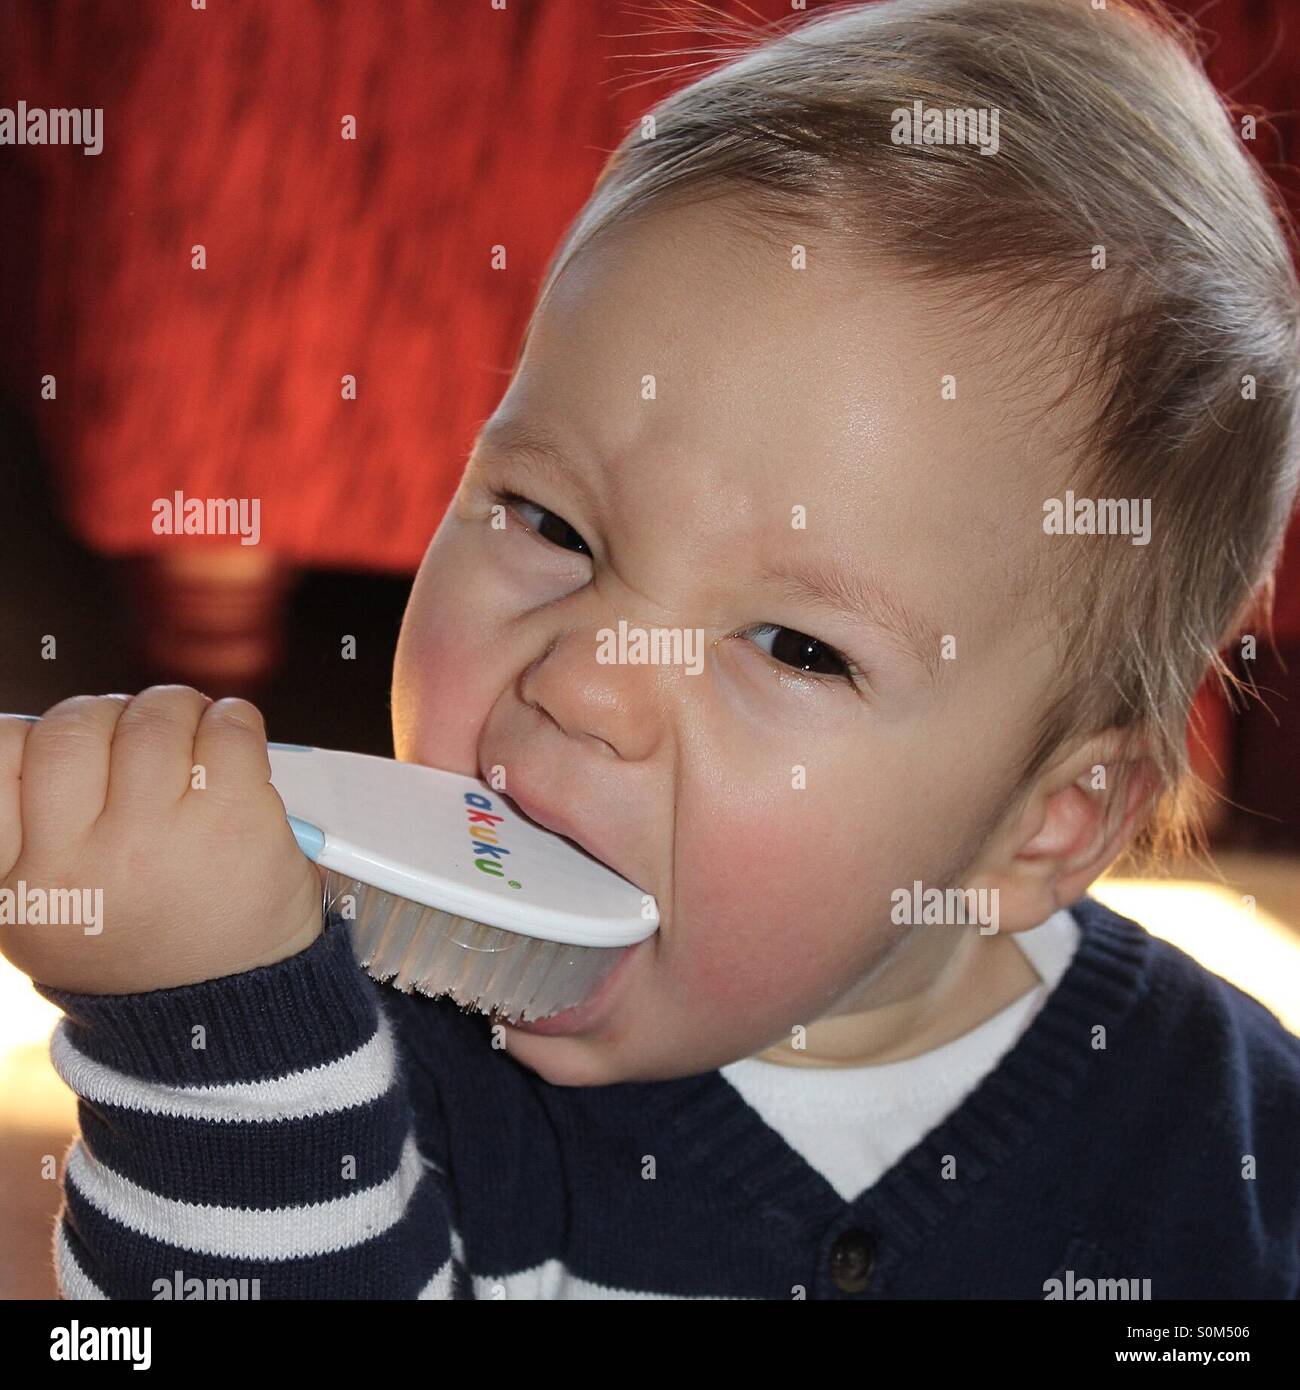 La dentizione 9 mesi baby boy ripieno spazzola per capelli nella sua bocca Foto Stock